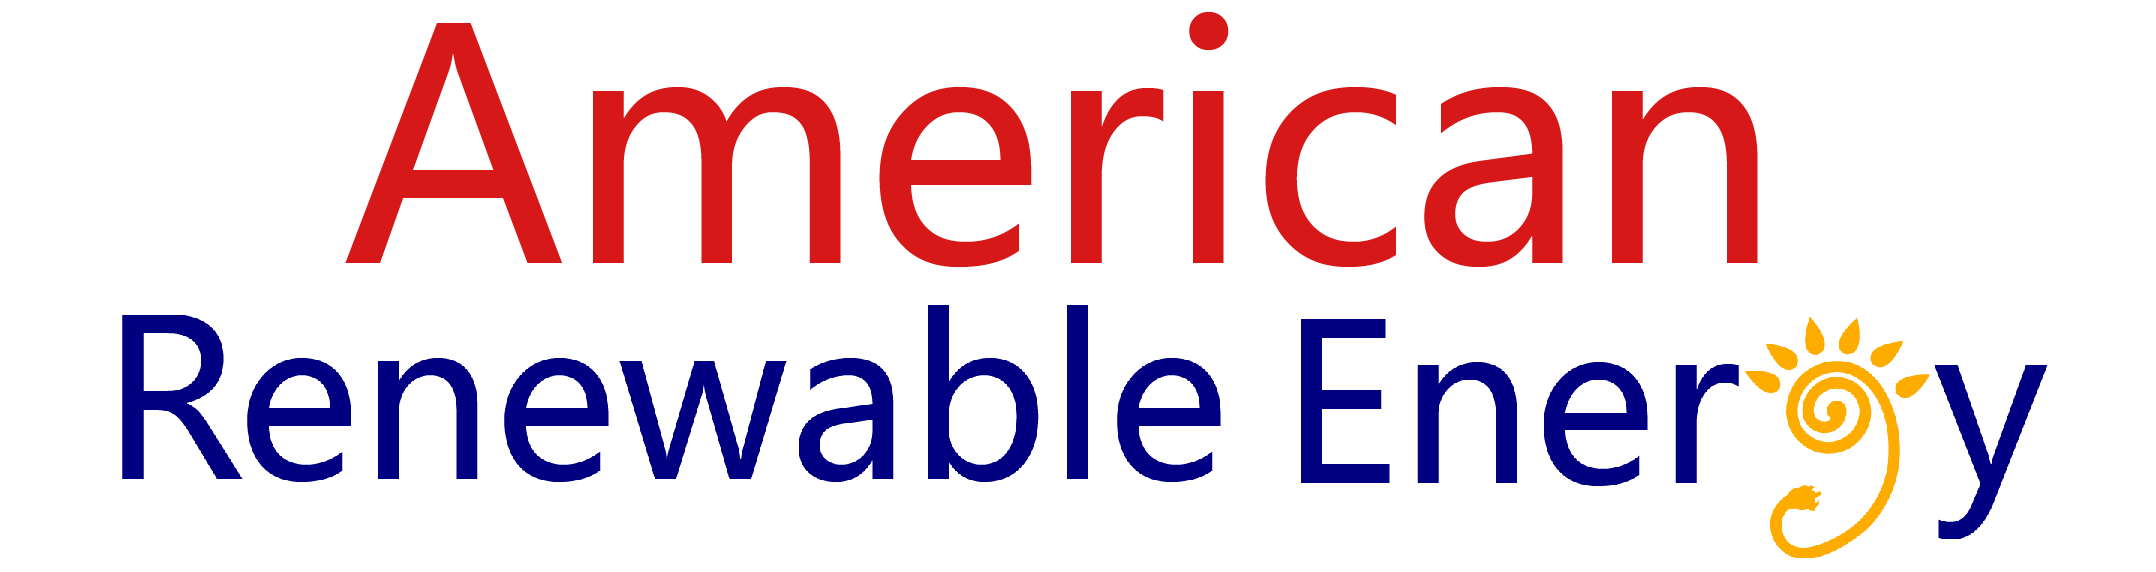 American Renewable Energy logo